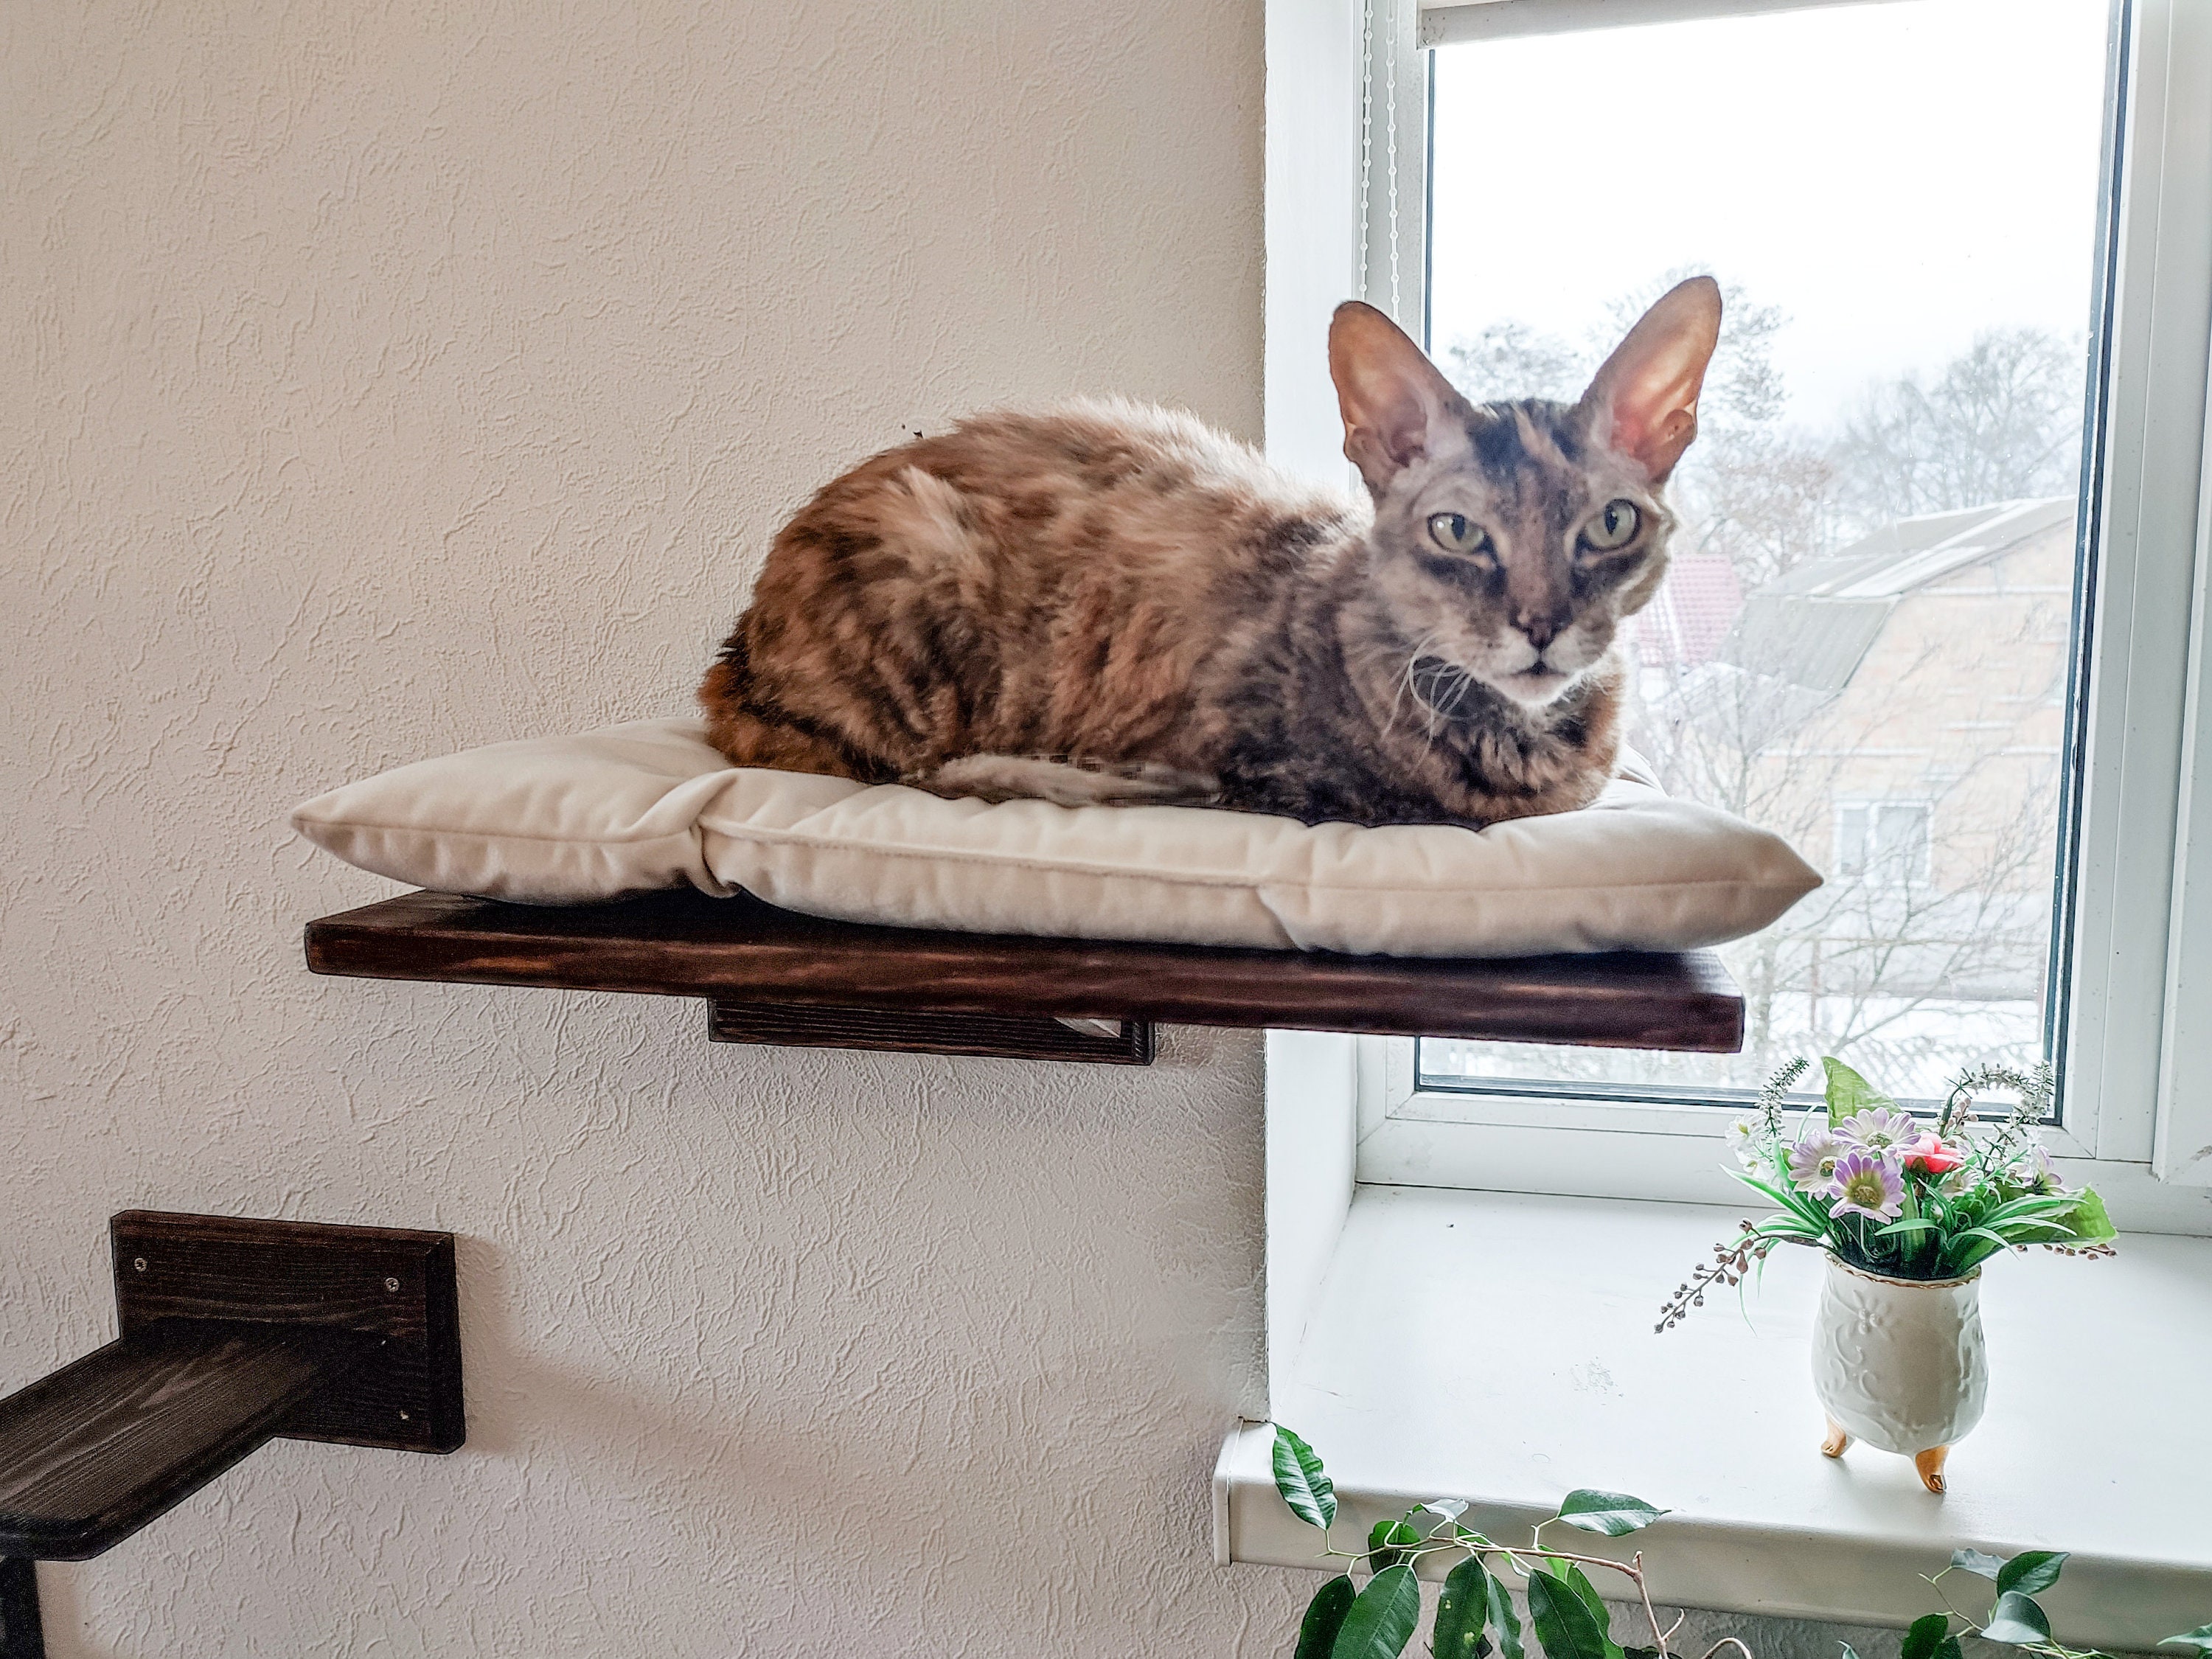 Percha de ventana para gatos, Hamaca para gatos, Cama con ventana para gatos,  Estantes de madera para gatos, Muebles minimalistas para mascotas -   México